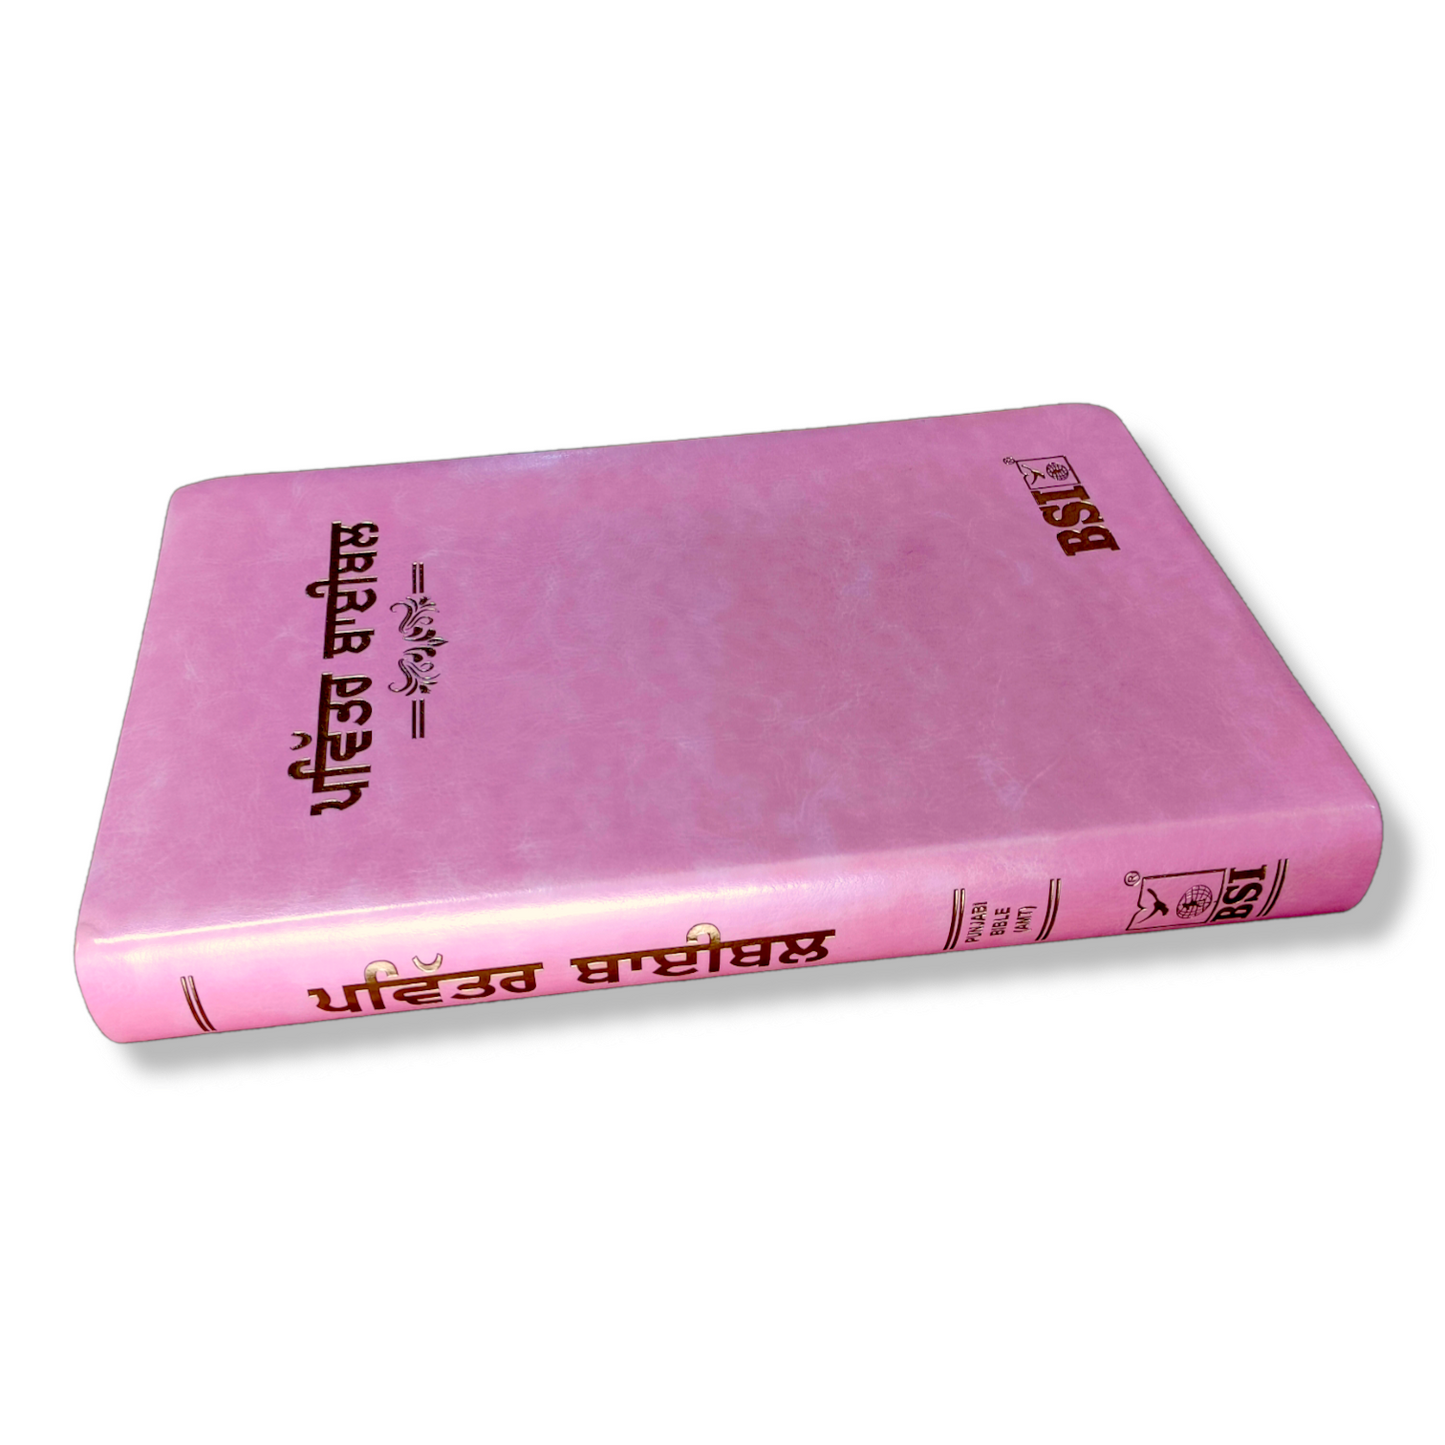 Punjabi Large Printed Bible In Pink Color Bound